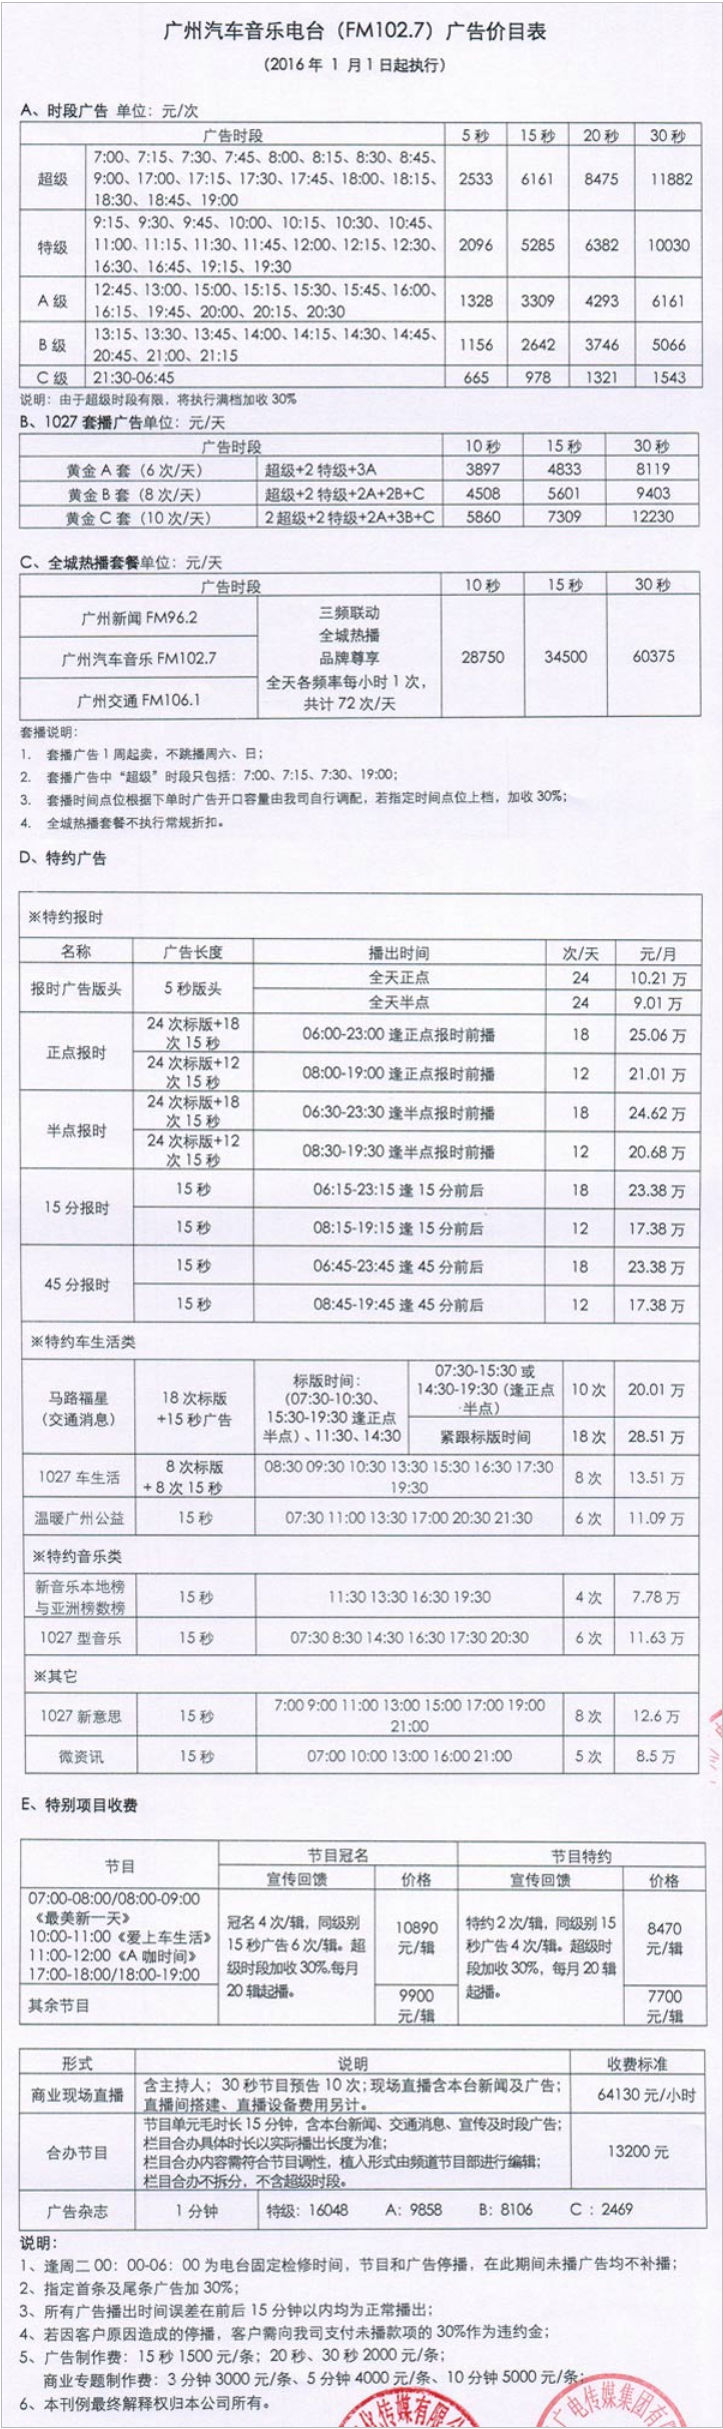 2016广州人民广播电台金曲广播102.7广告报价表.png